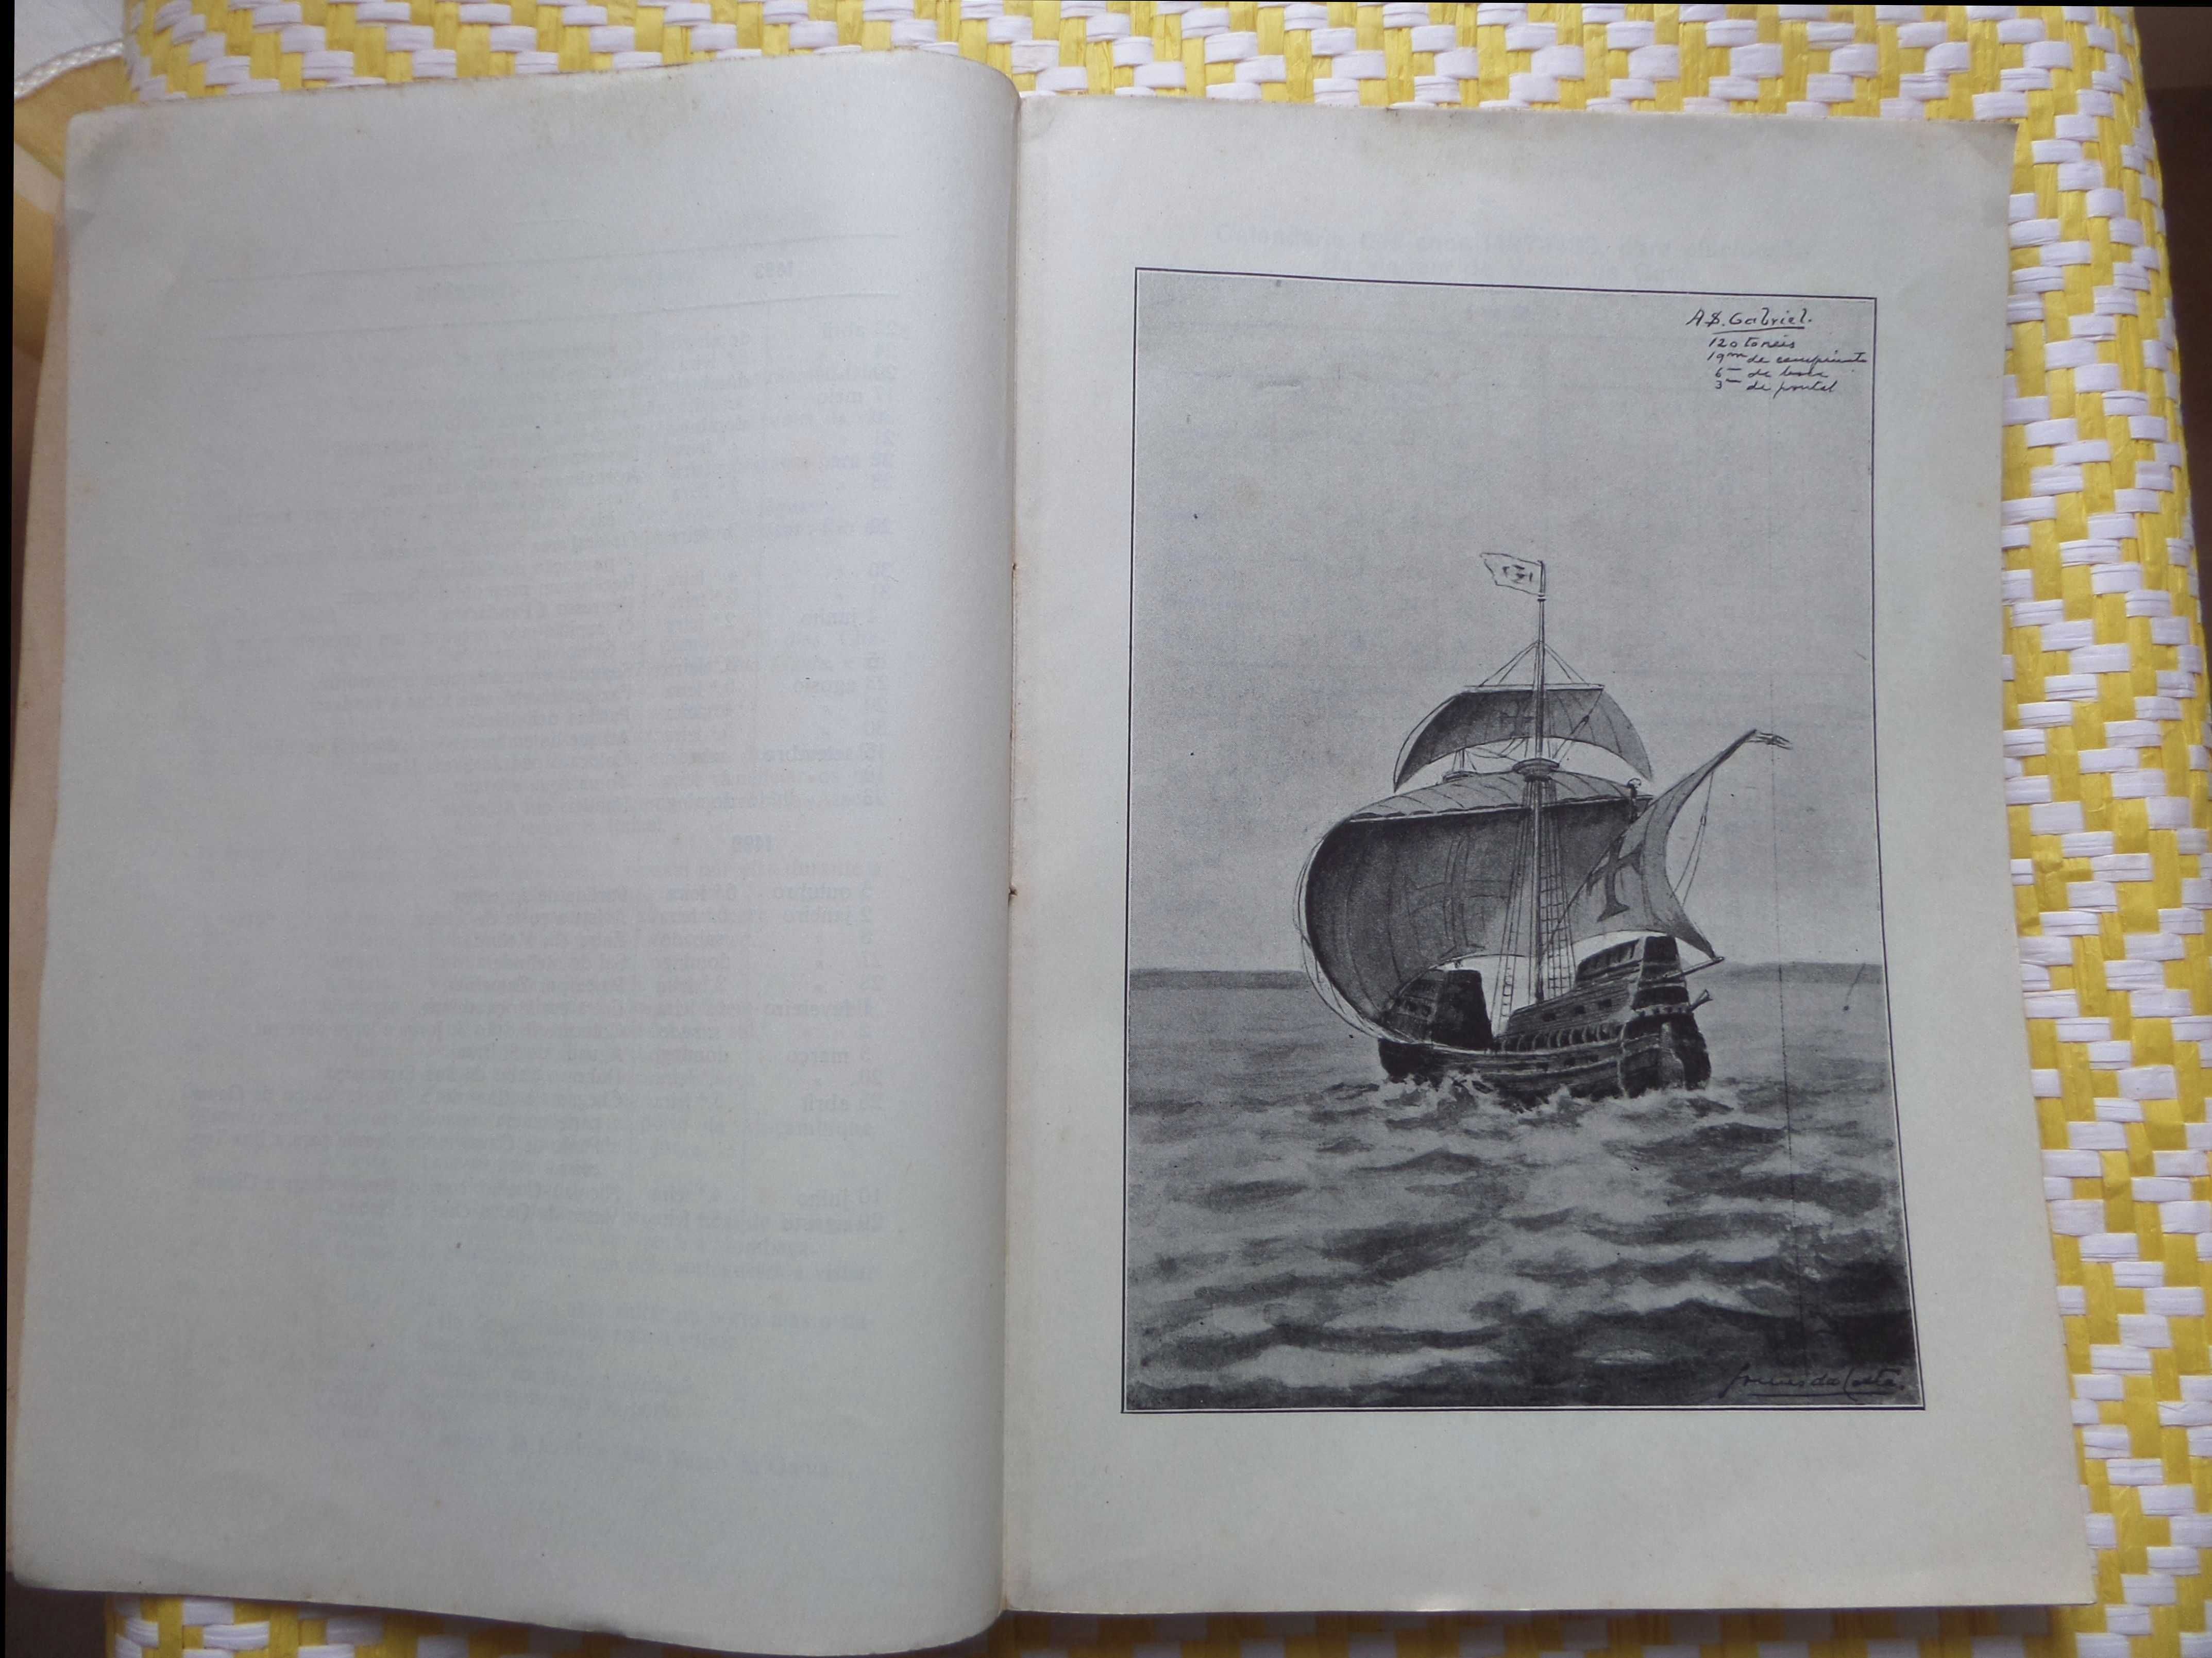 Descobrimentos e Conquistas. 
Vol. II – A Viagem de Vasco da Gama